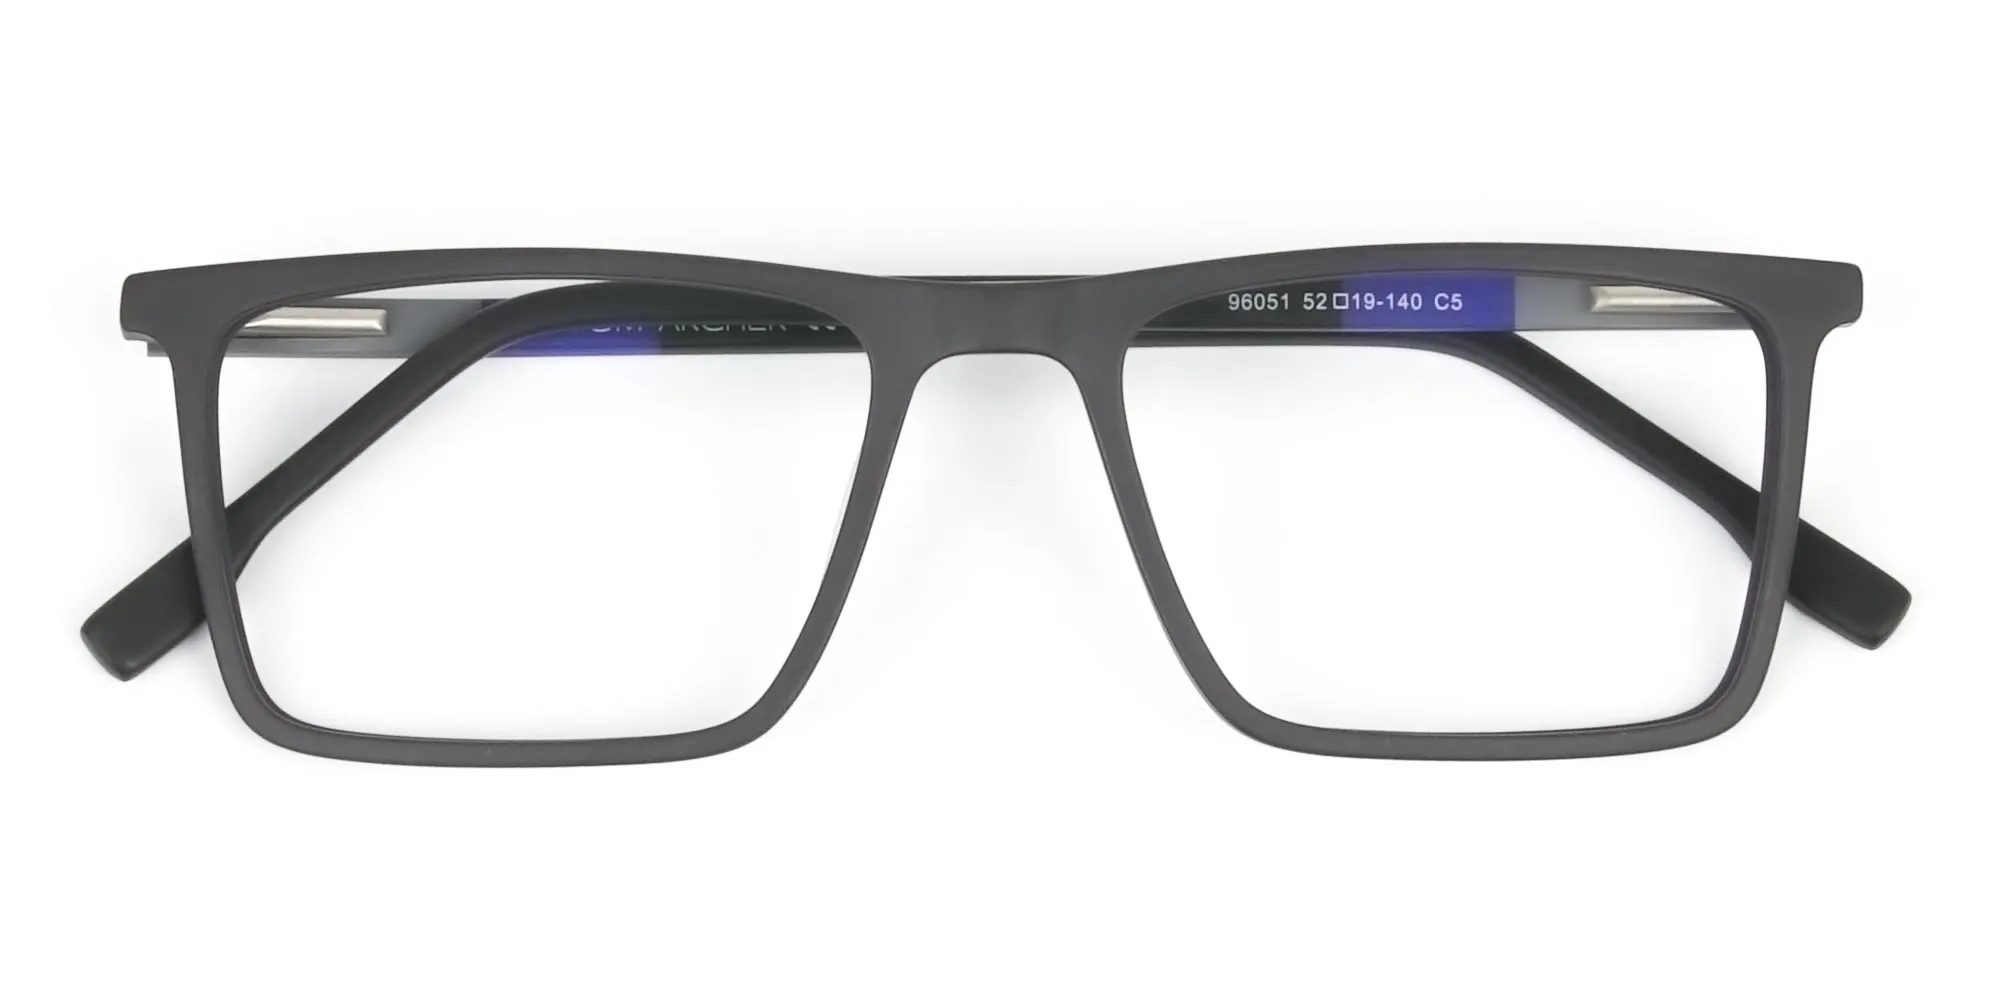 Black & Blue Rectangular Glasses - 2